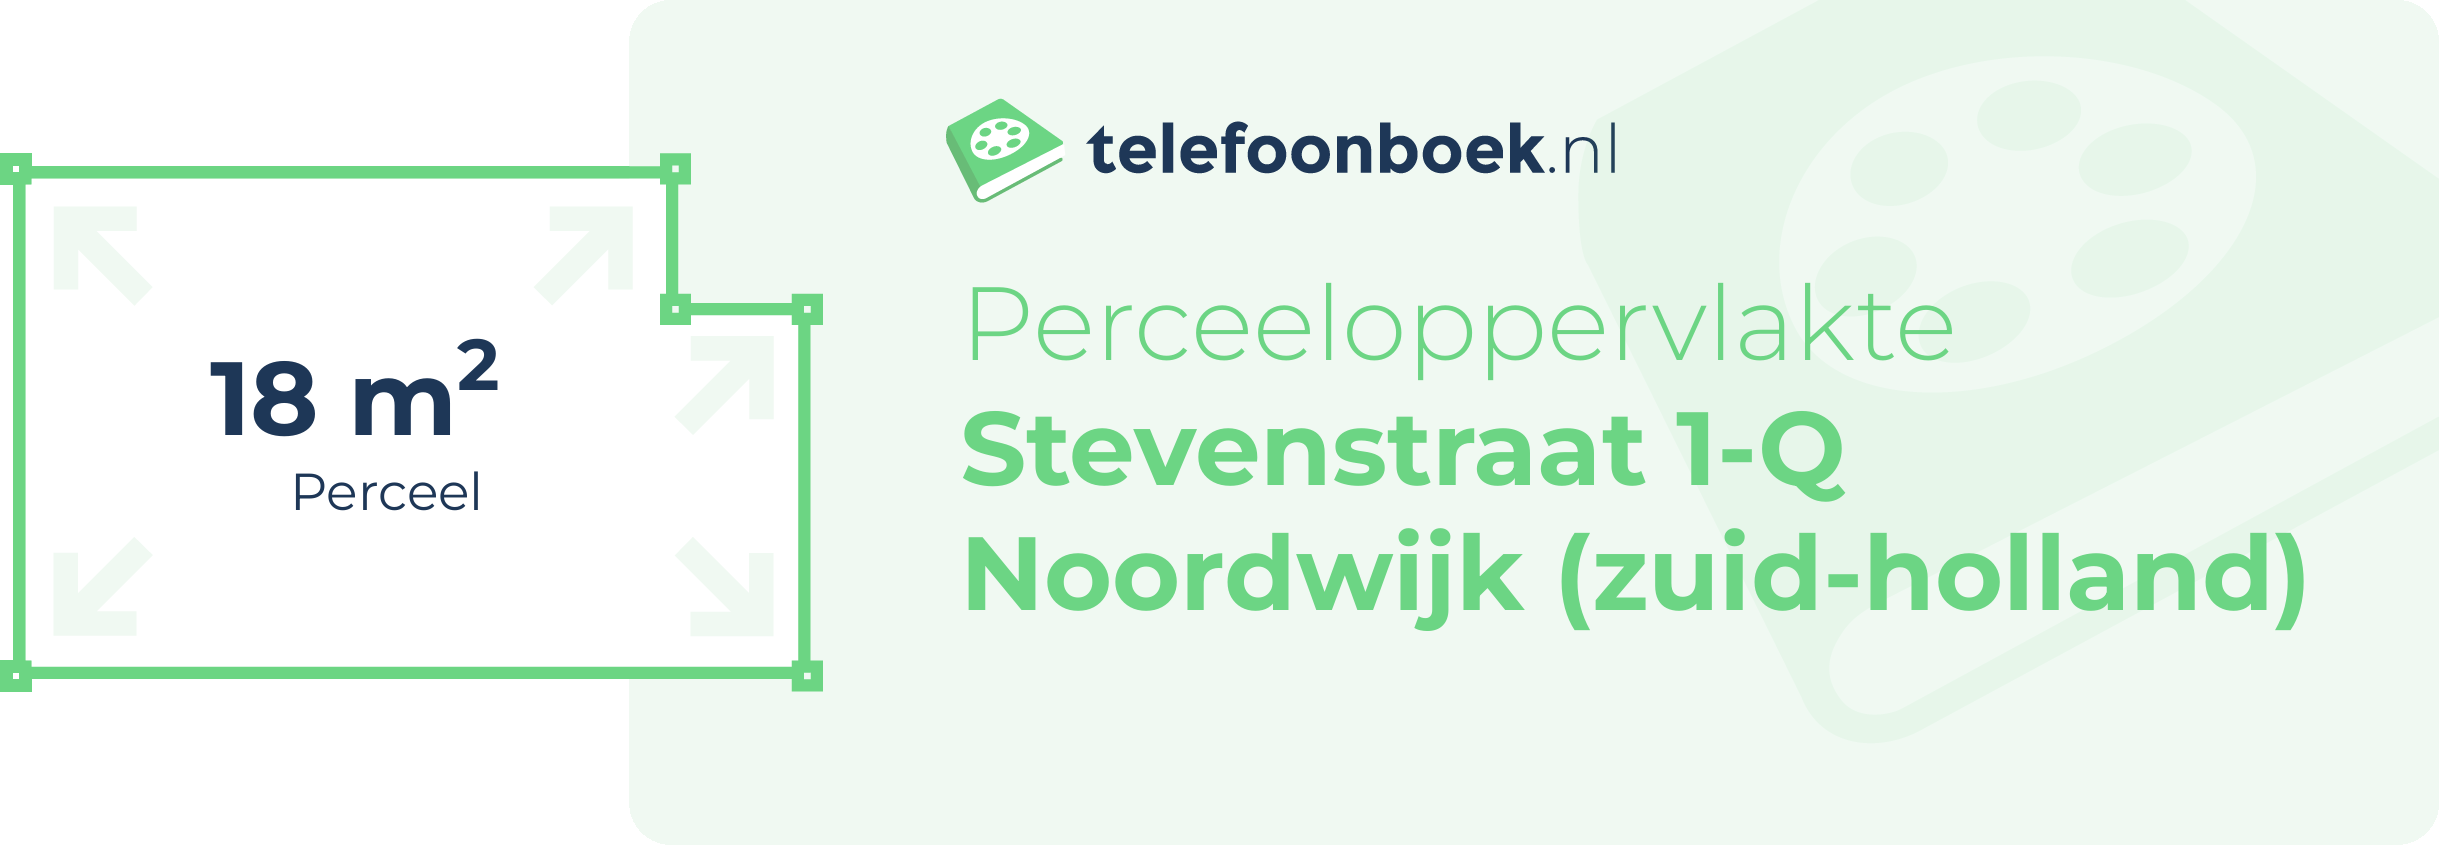 Perceeloppervlakte Stevenstraat 1-Q Noordwijk (Zuid-Holland)